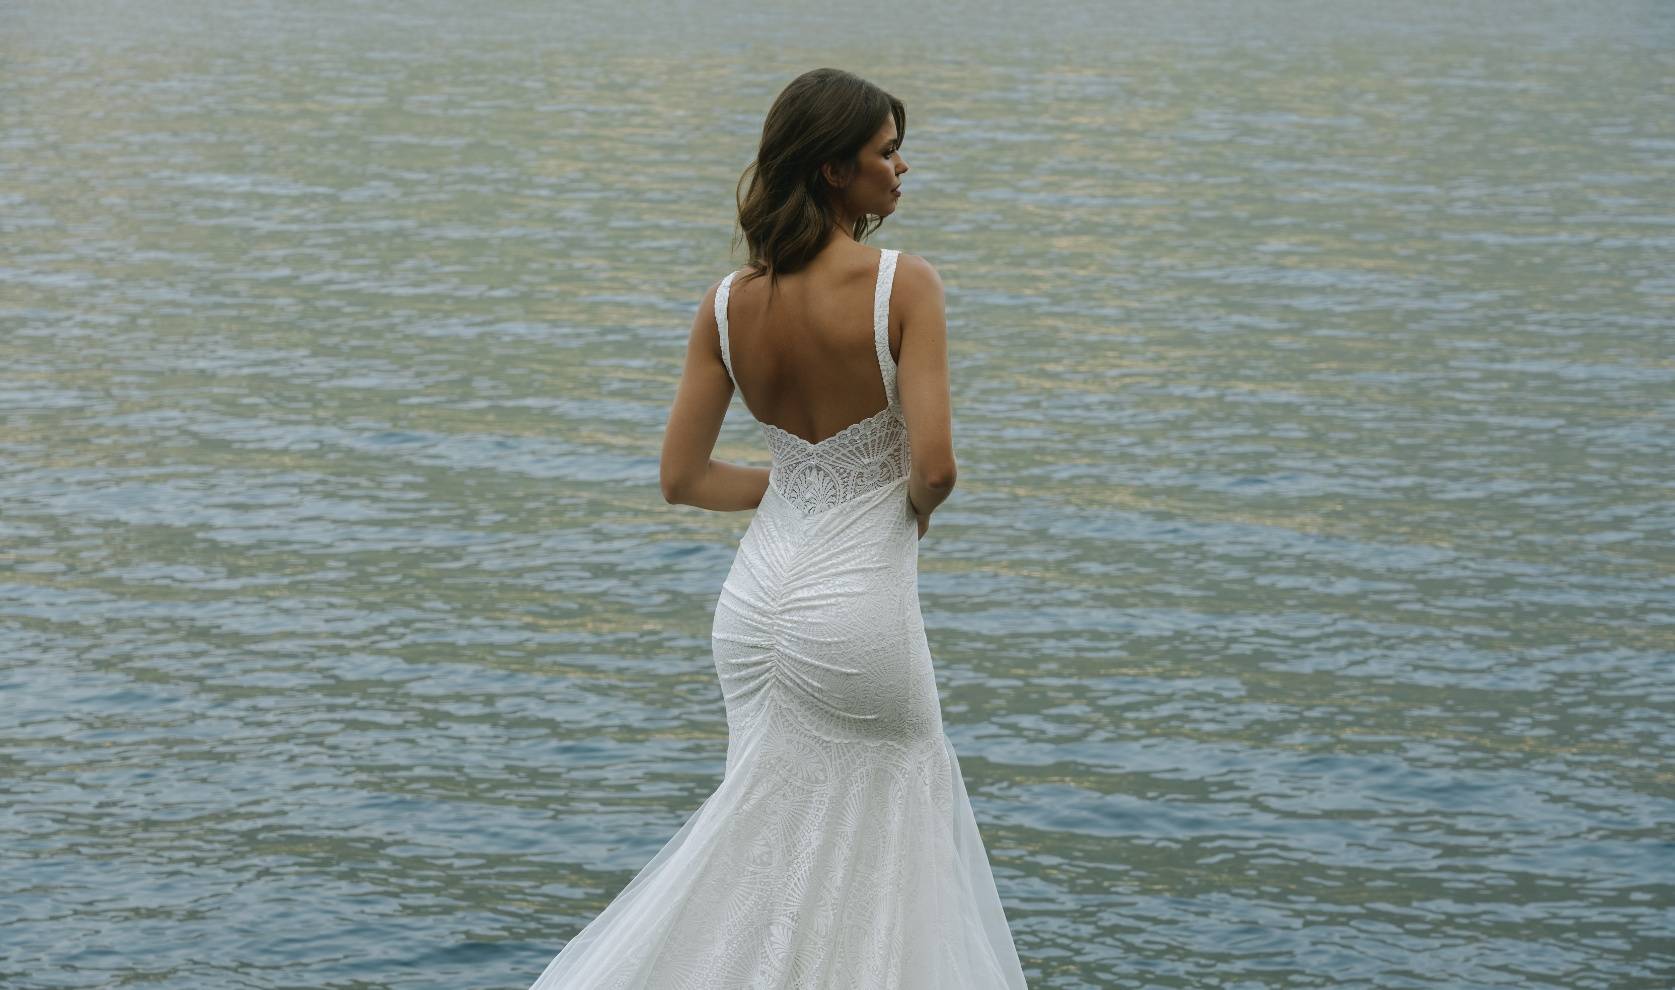 Modell im Sienna-Kleid mit Meer im Hintergrund